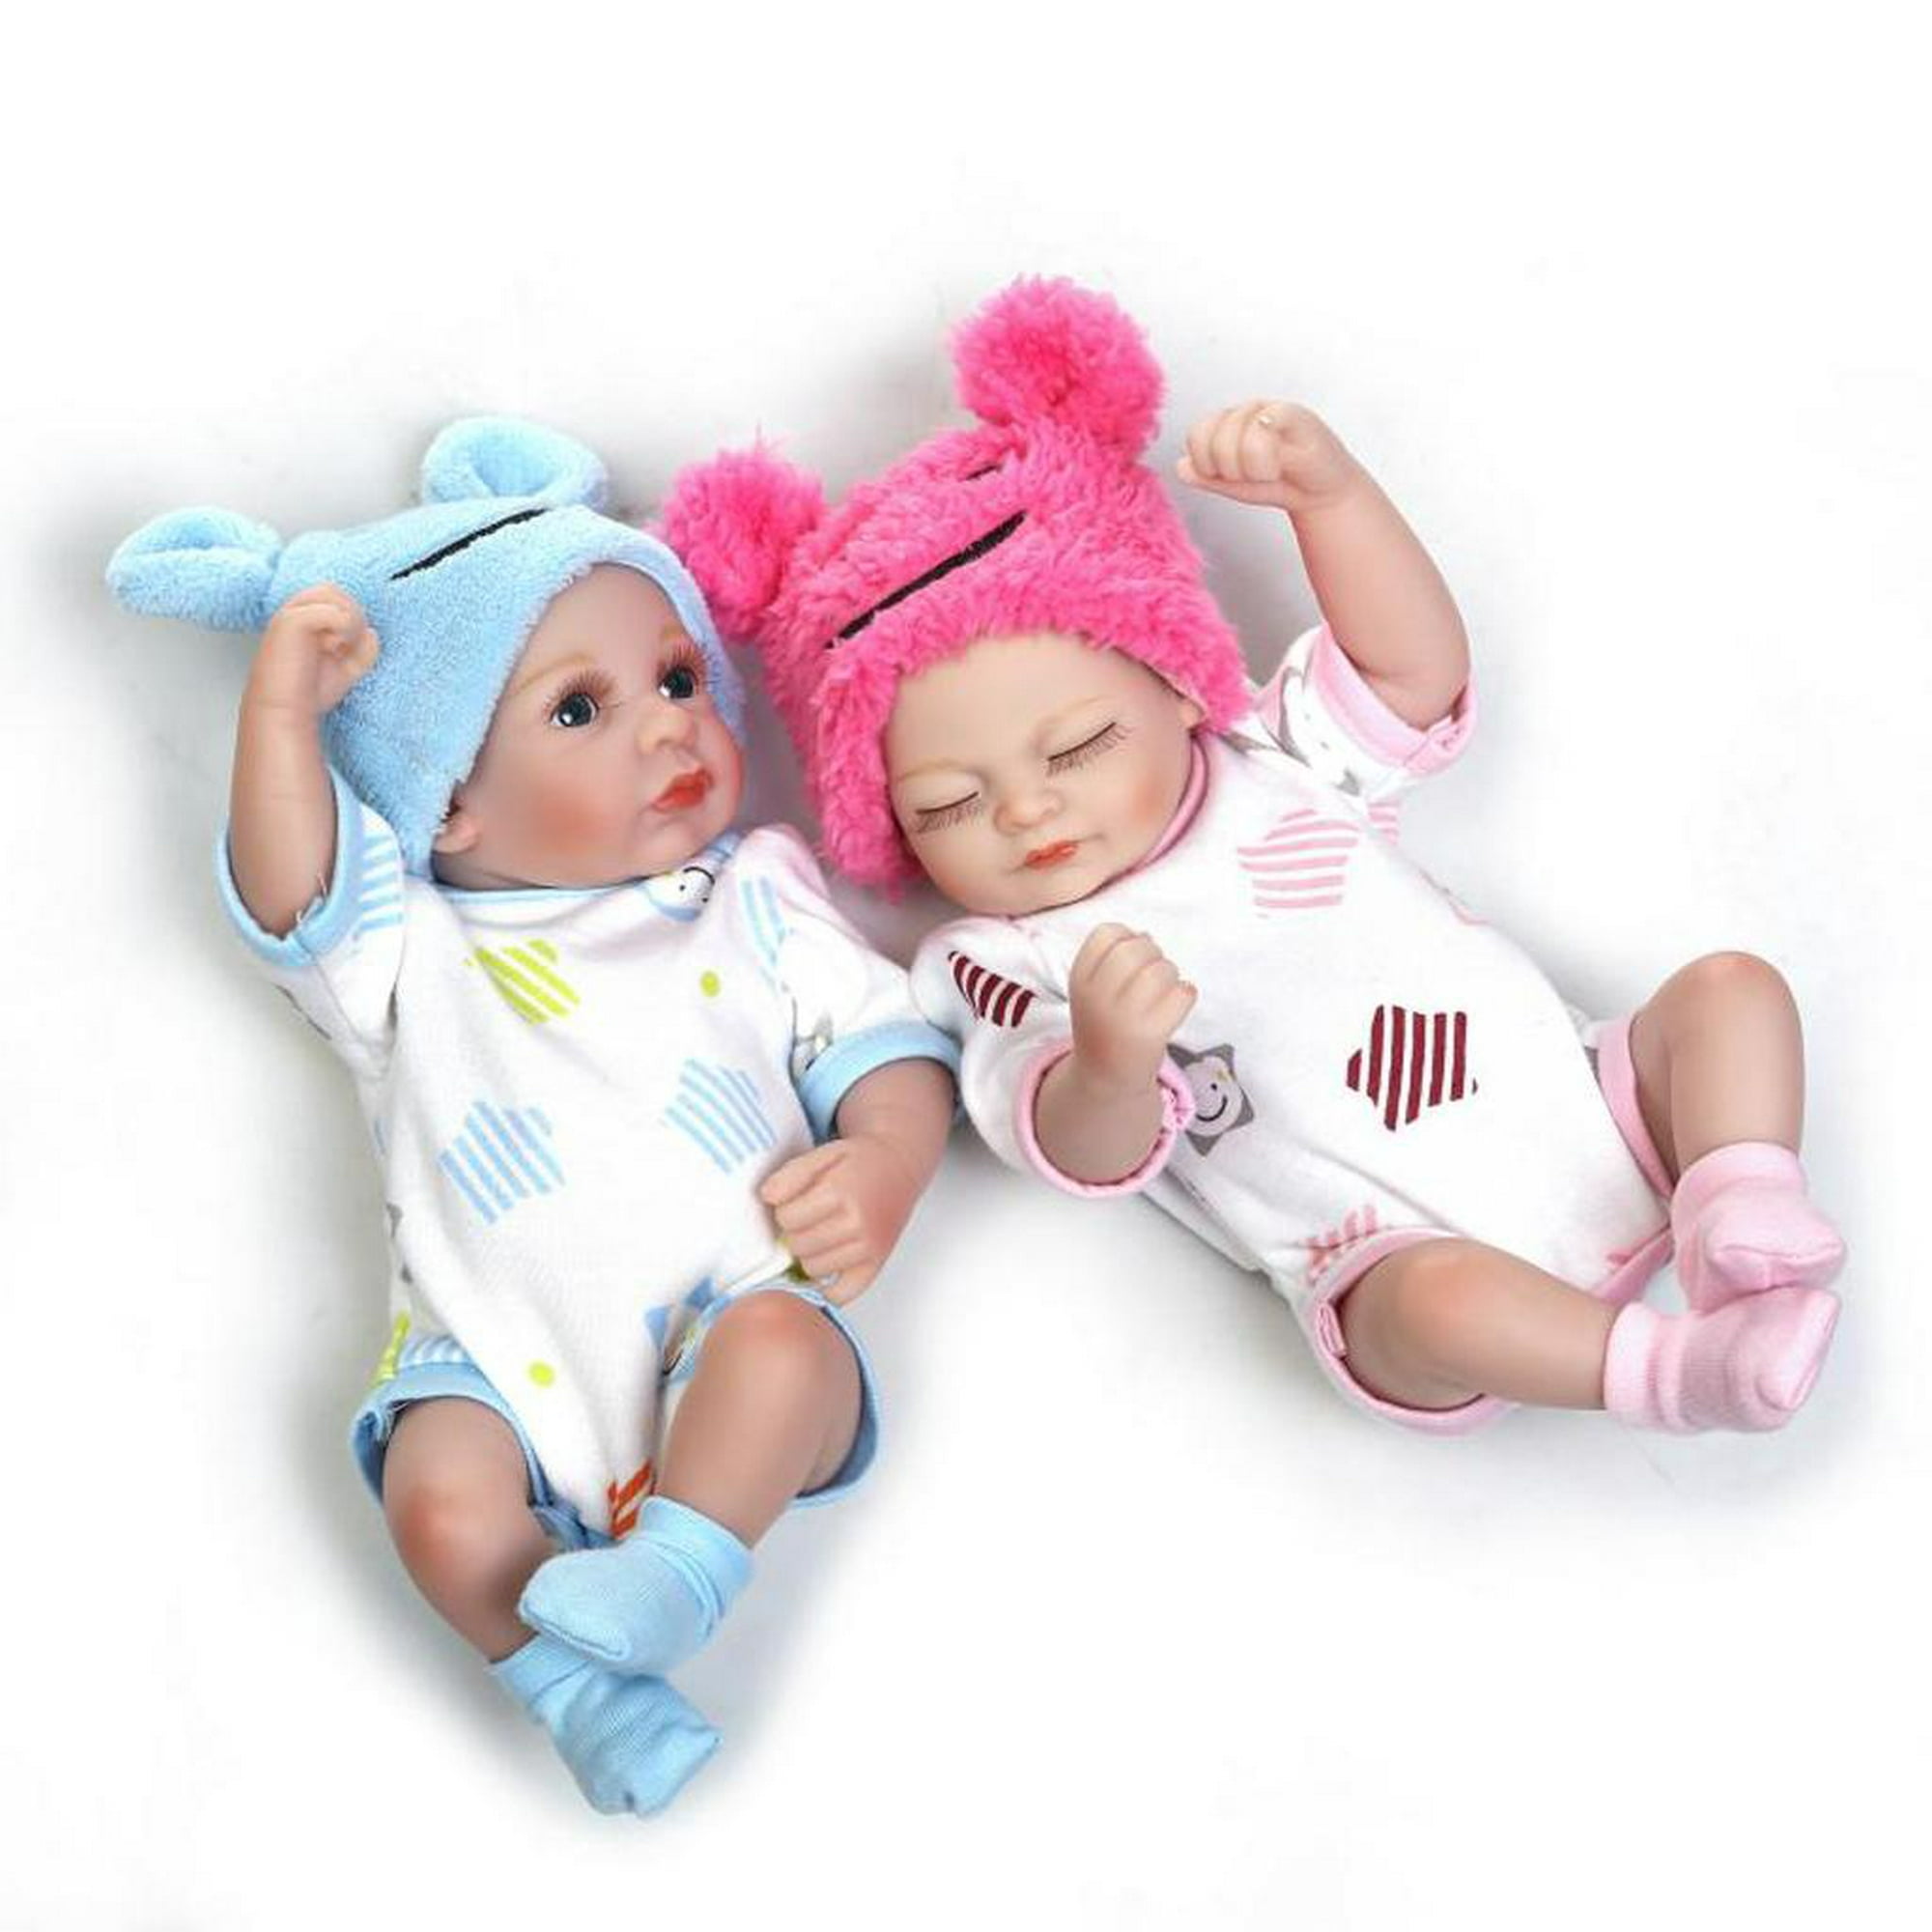  Ghzste Reborn Baby Full Silicone Realista, Muñeca Reborn Real  Life Simulación Muñeca Bebé y Muñecas Infantiles Recién Nacido, 45 cm:  Juguetes y juegos